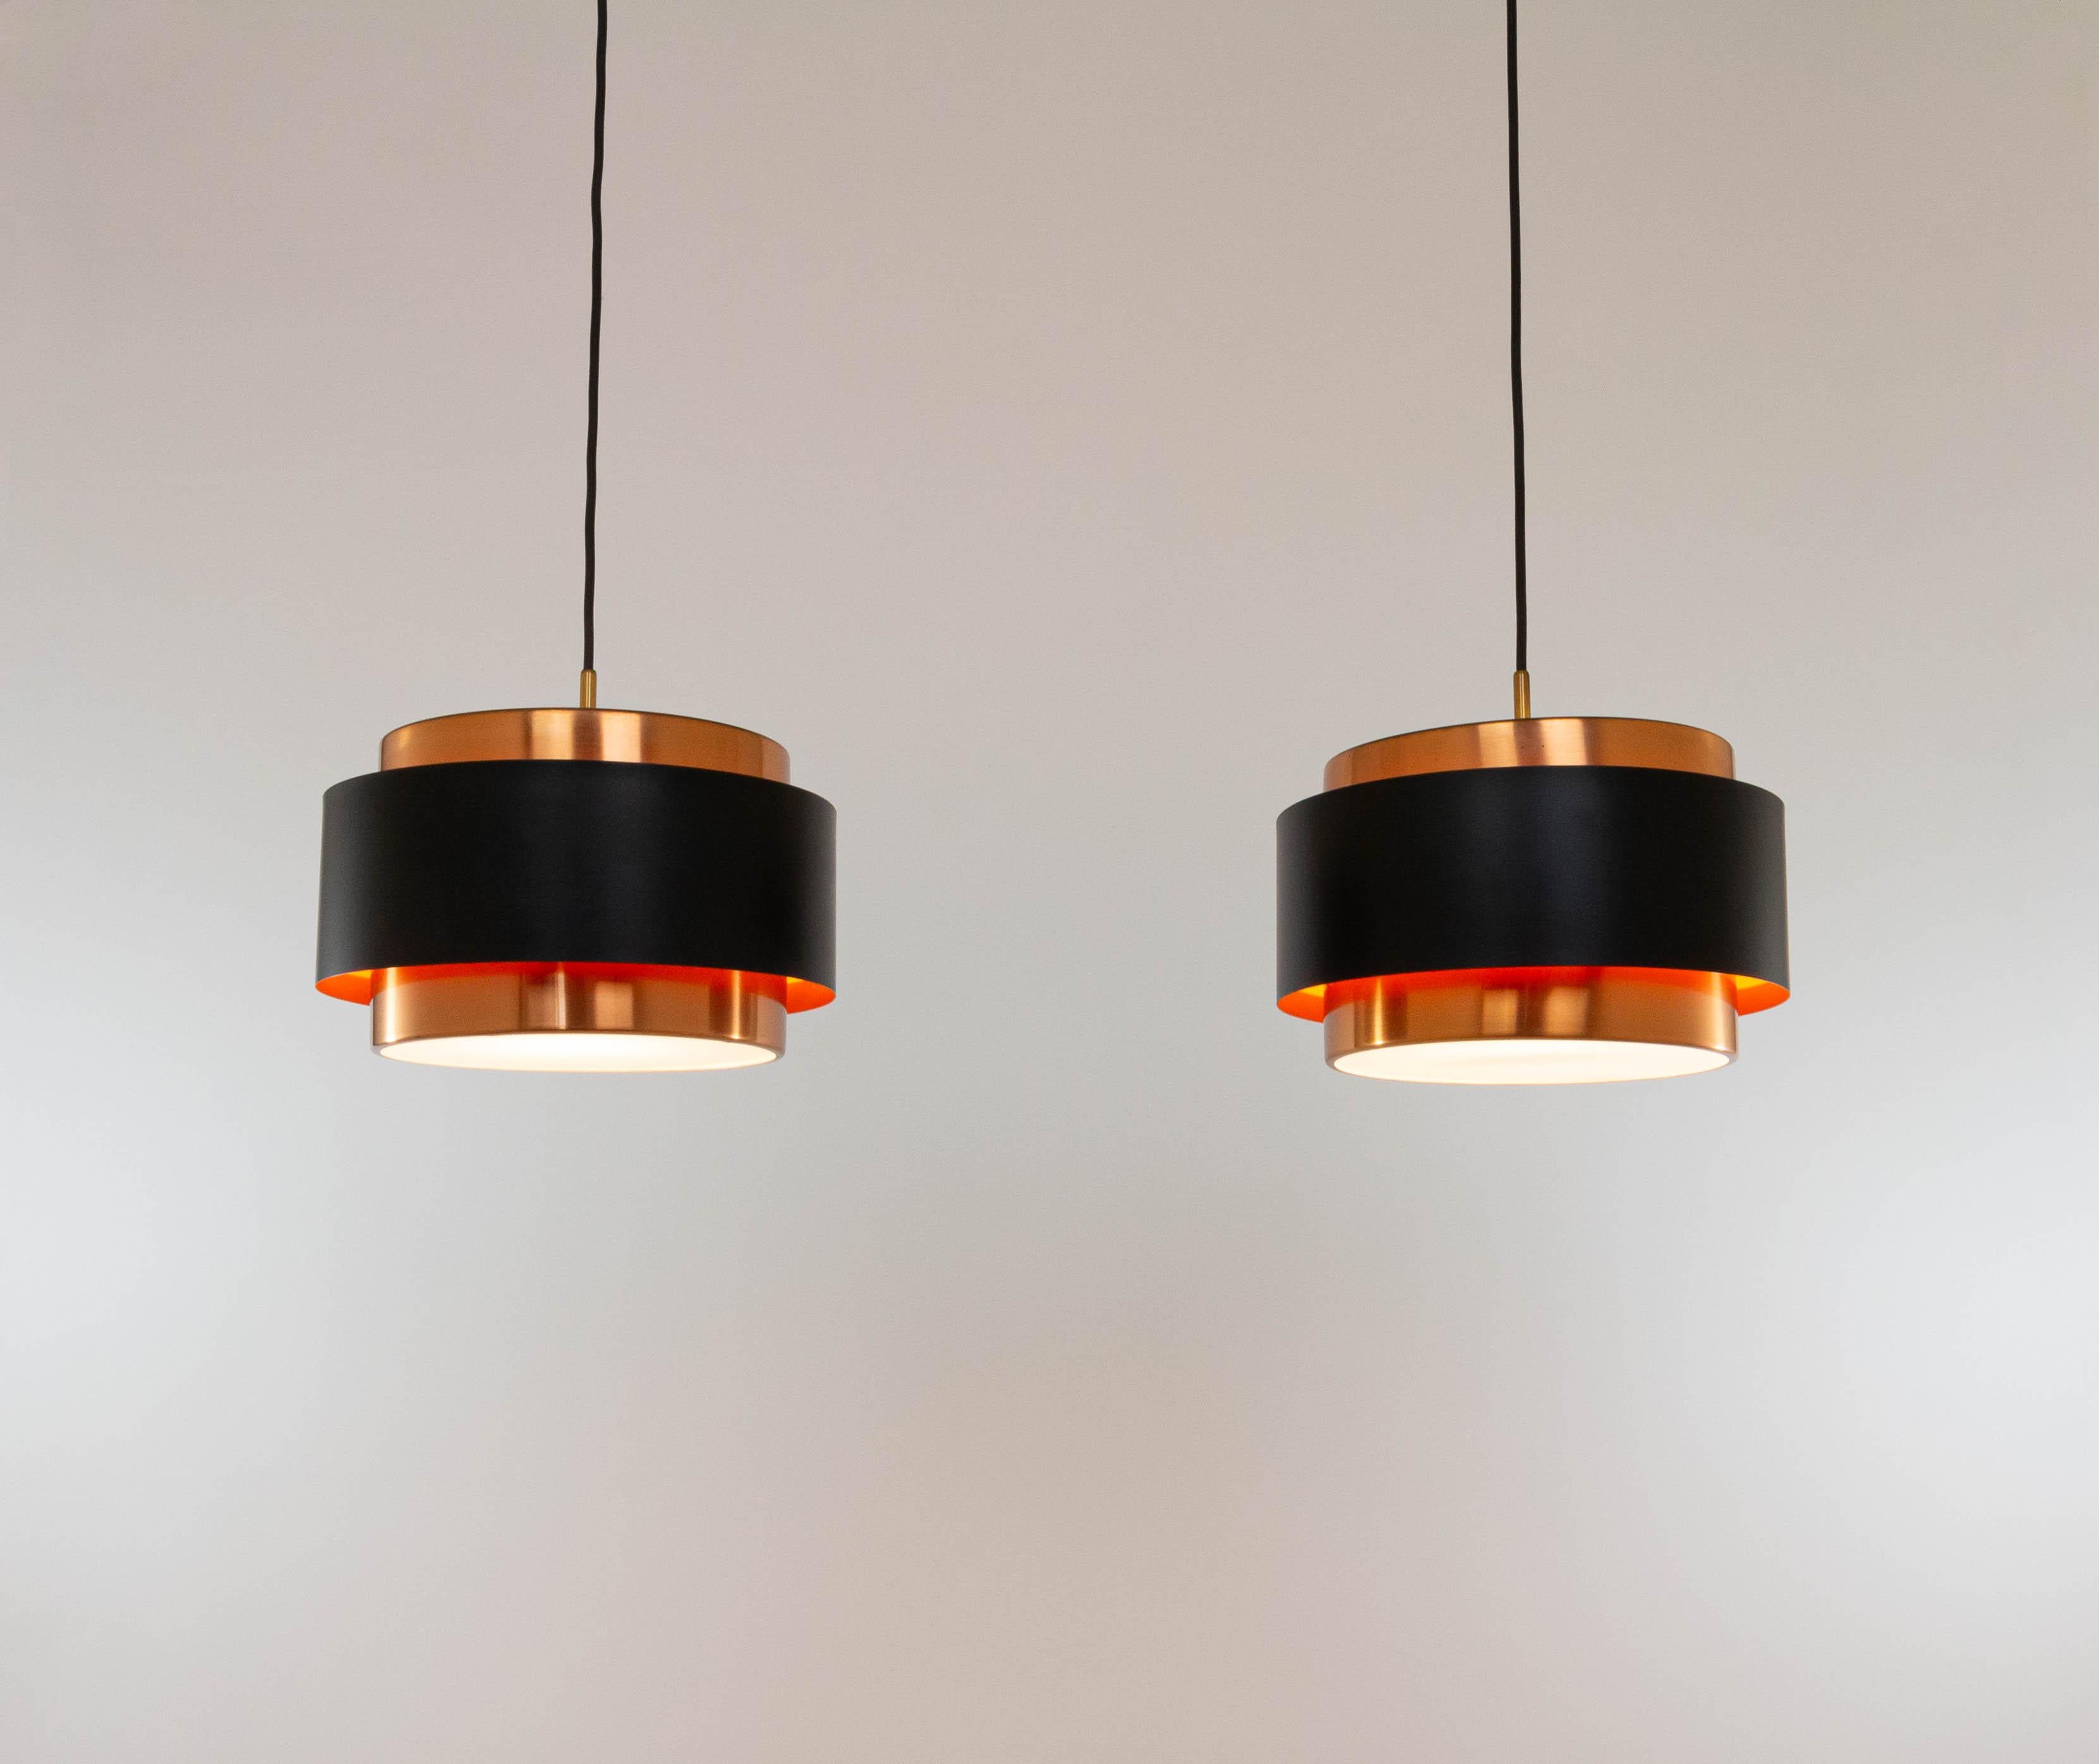 Deux pendentifs Saturne, conçus par le designer danois Jo Hammerborg et fabriqués par Fog & Mørup.

Le modèle est une structure composée de deux bandes cylindriques concentriques en cuivre qui sont maintenues ensemble par une bande laquée noire. En